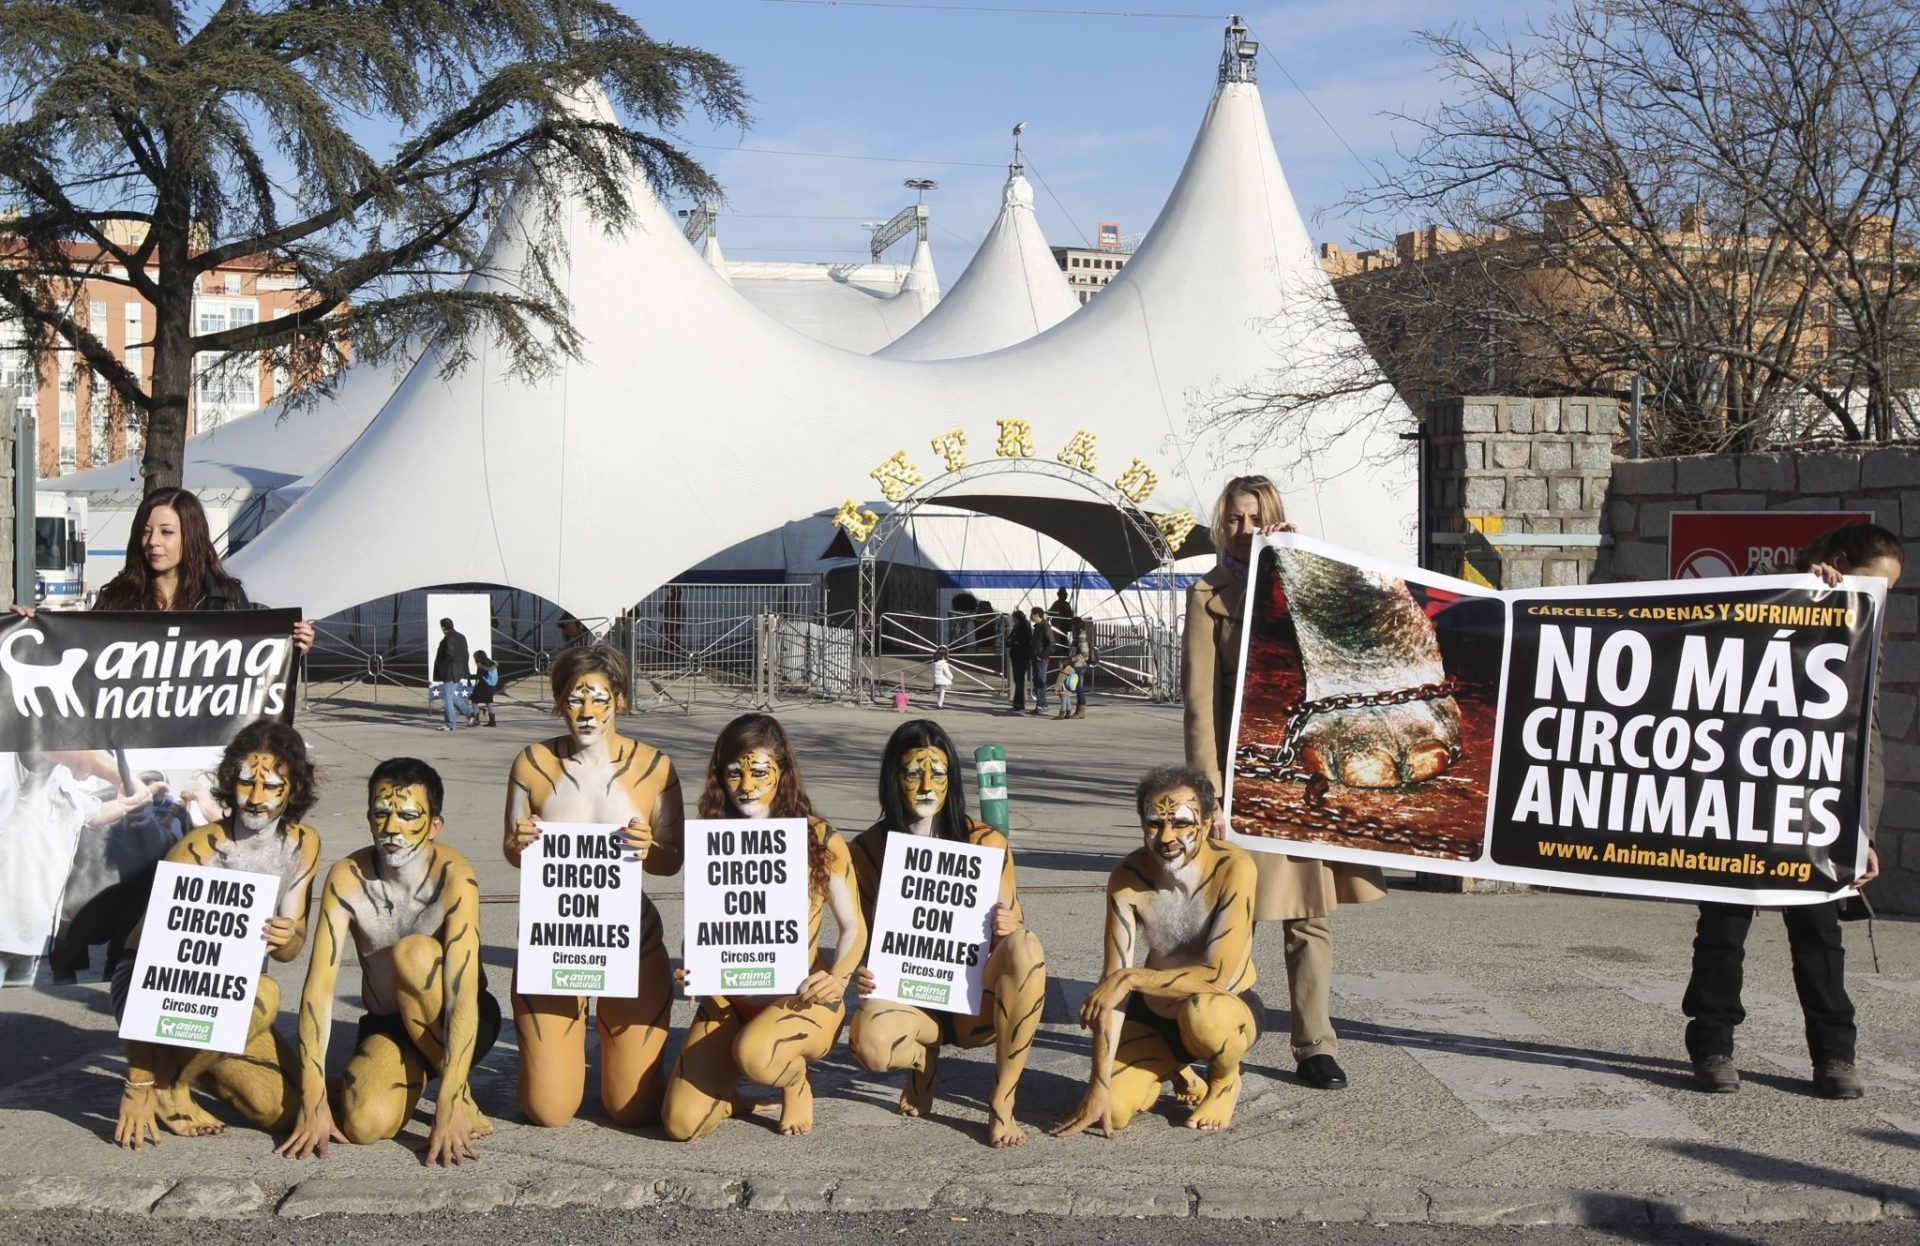  Animalistas desnudos pintados de tigre protestan a la entrada del Circo Americano, por la existencia de circos con animales. EFE/ ÁNGEL DÍAZ